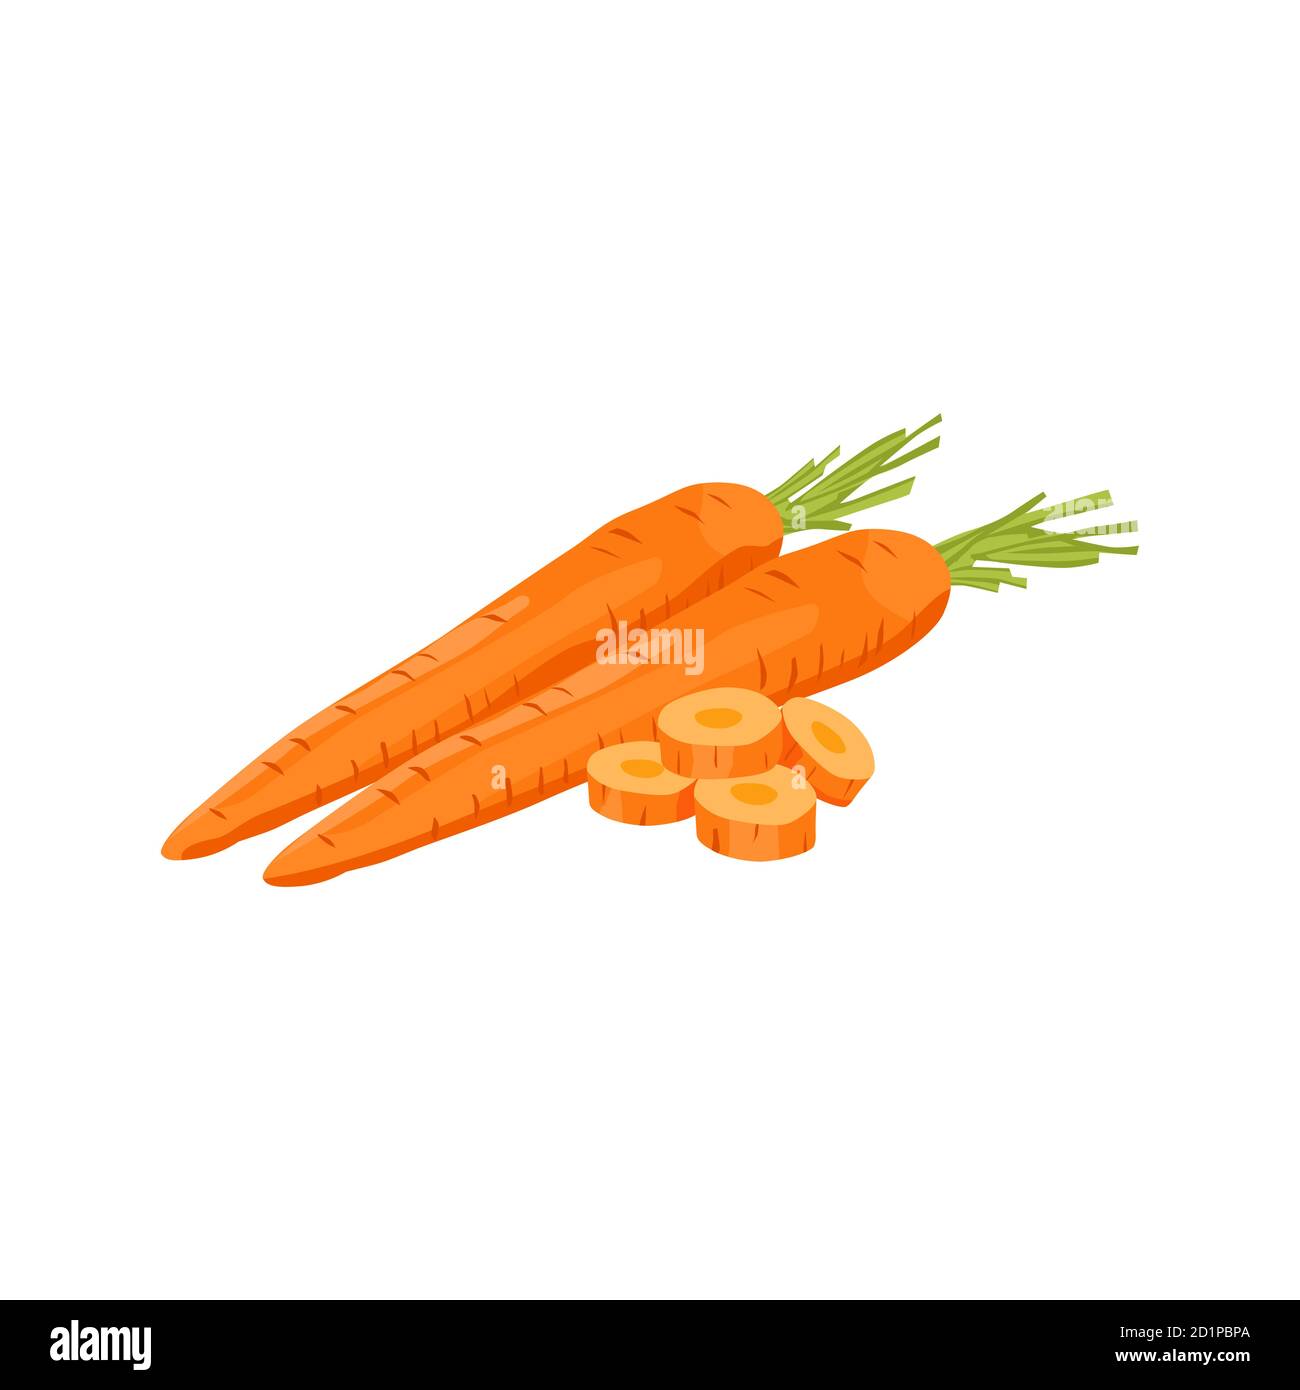 Carotte de légumes frais vecteur isolé sur fond blanc Illustration de Vecteur